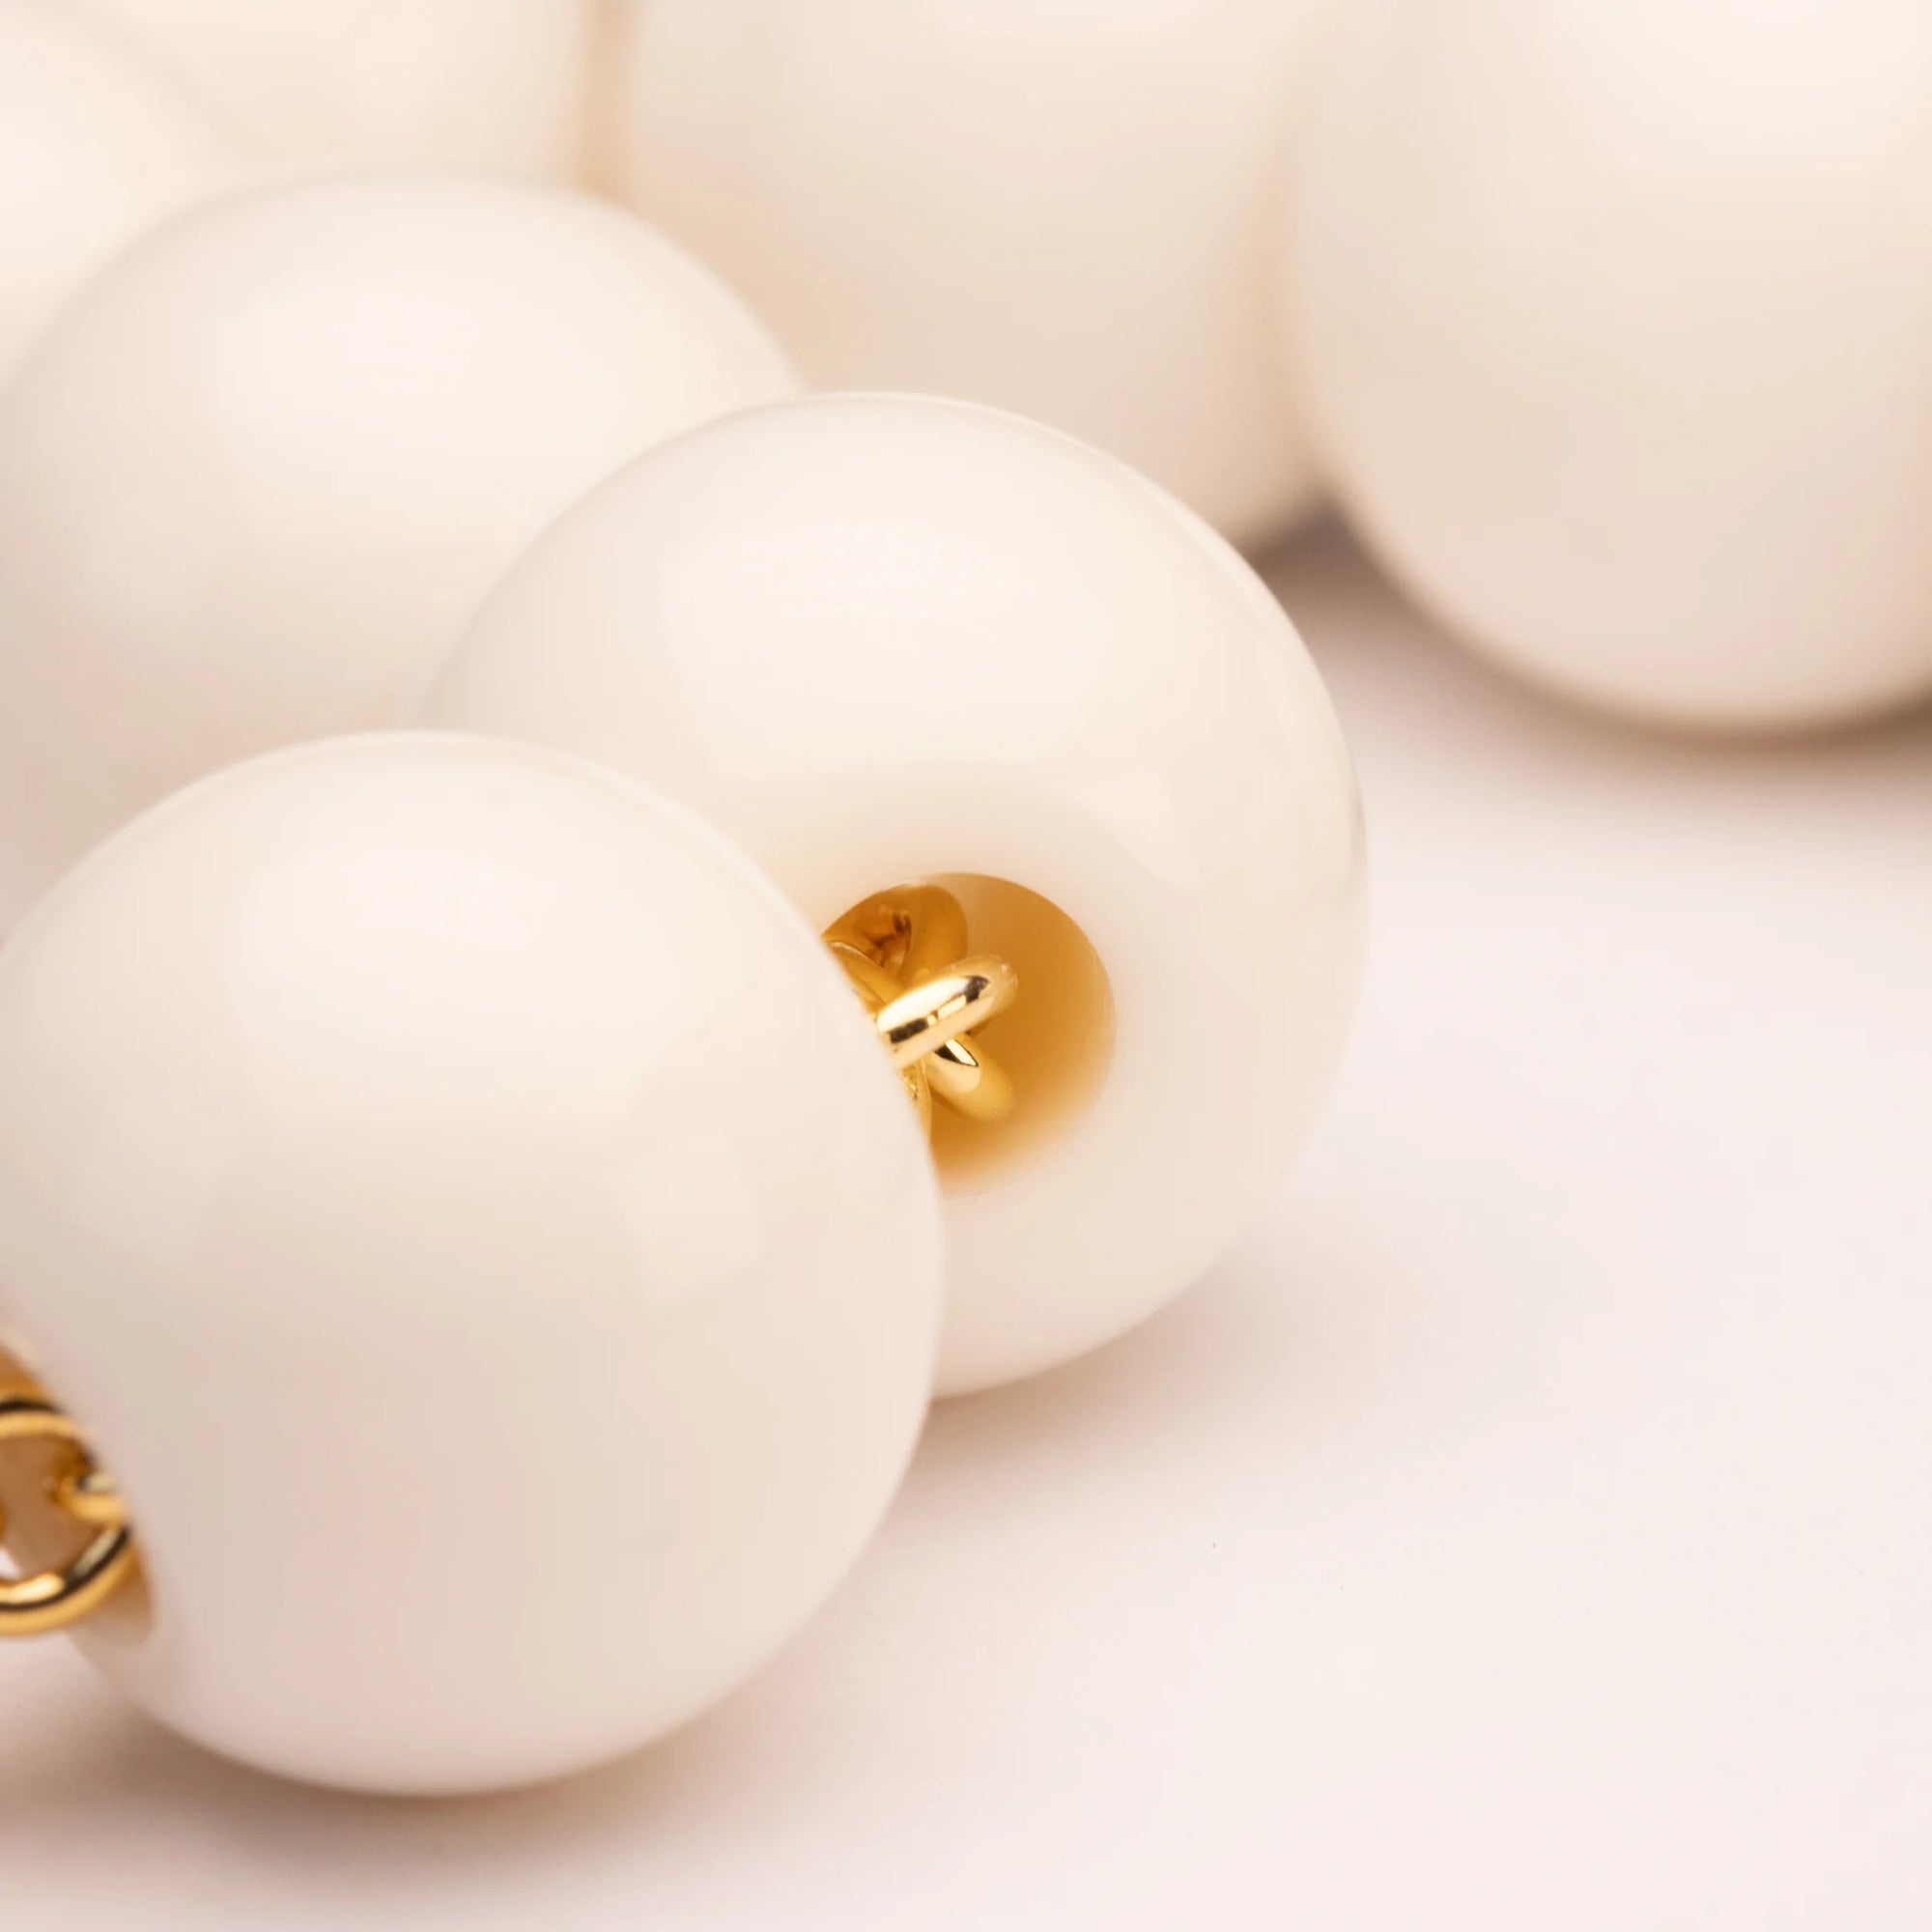 Beads Bracelet - OFF WHITE